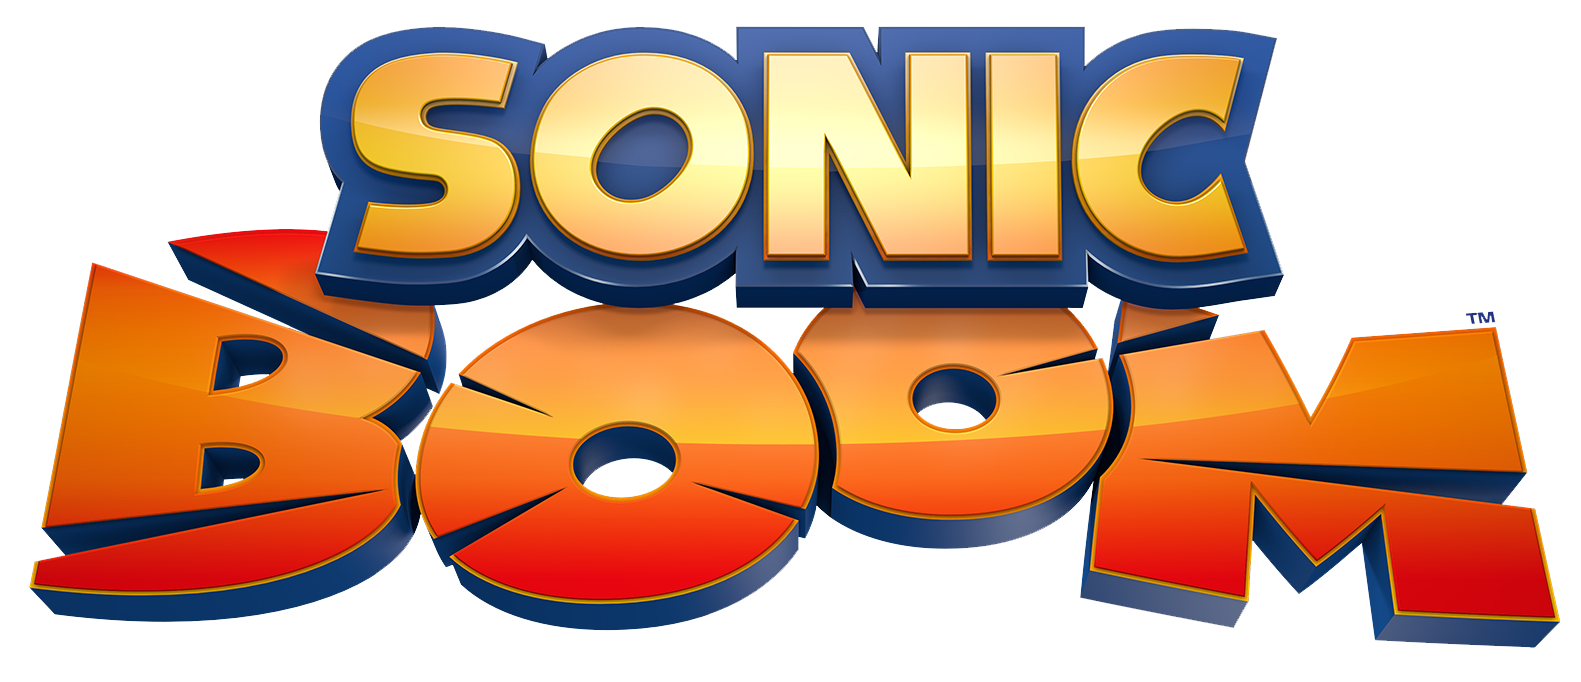 Lista traz as versões mais bizarras de Sonic no mundo dos games